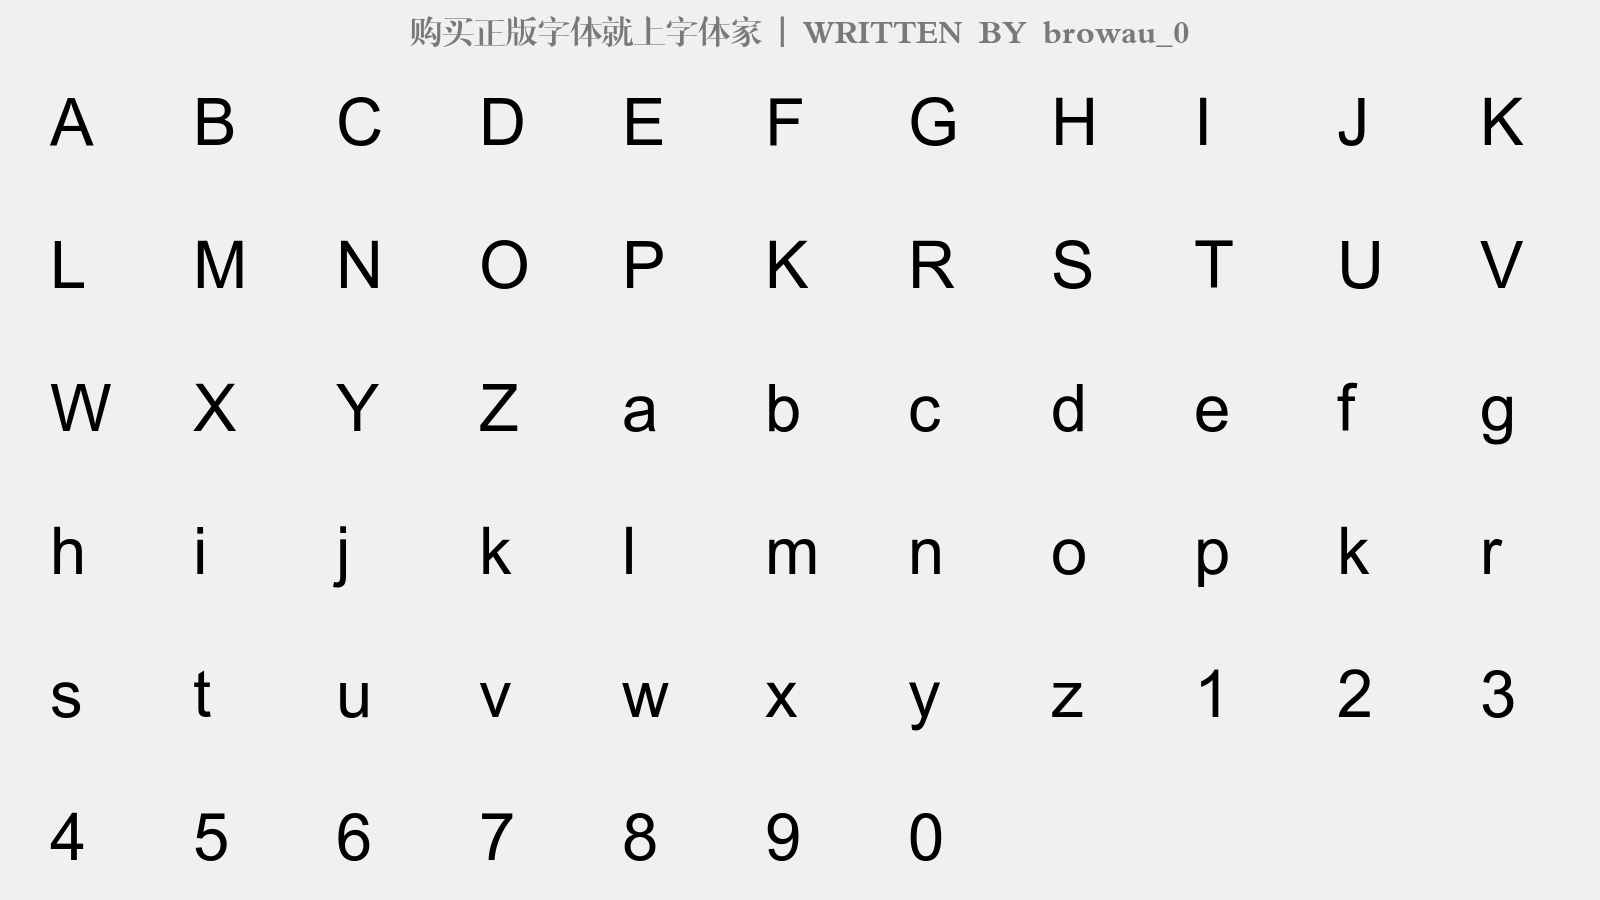 browau_0 - 大写字母/小写字母/数字